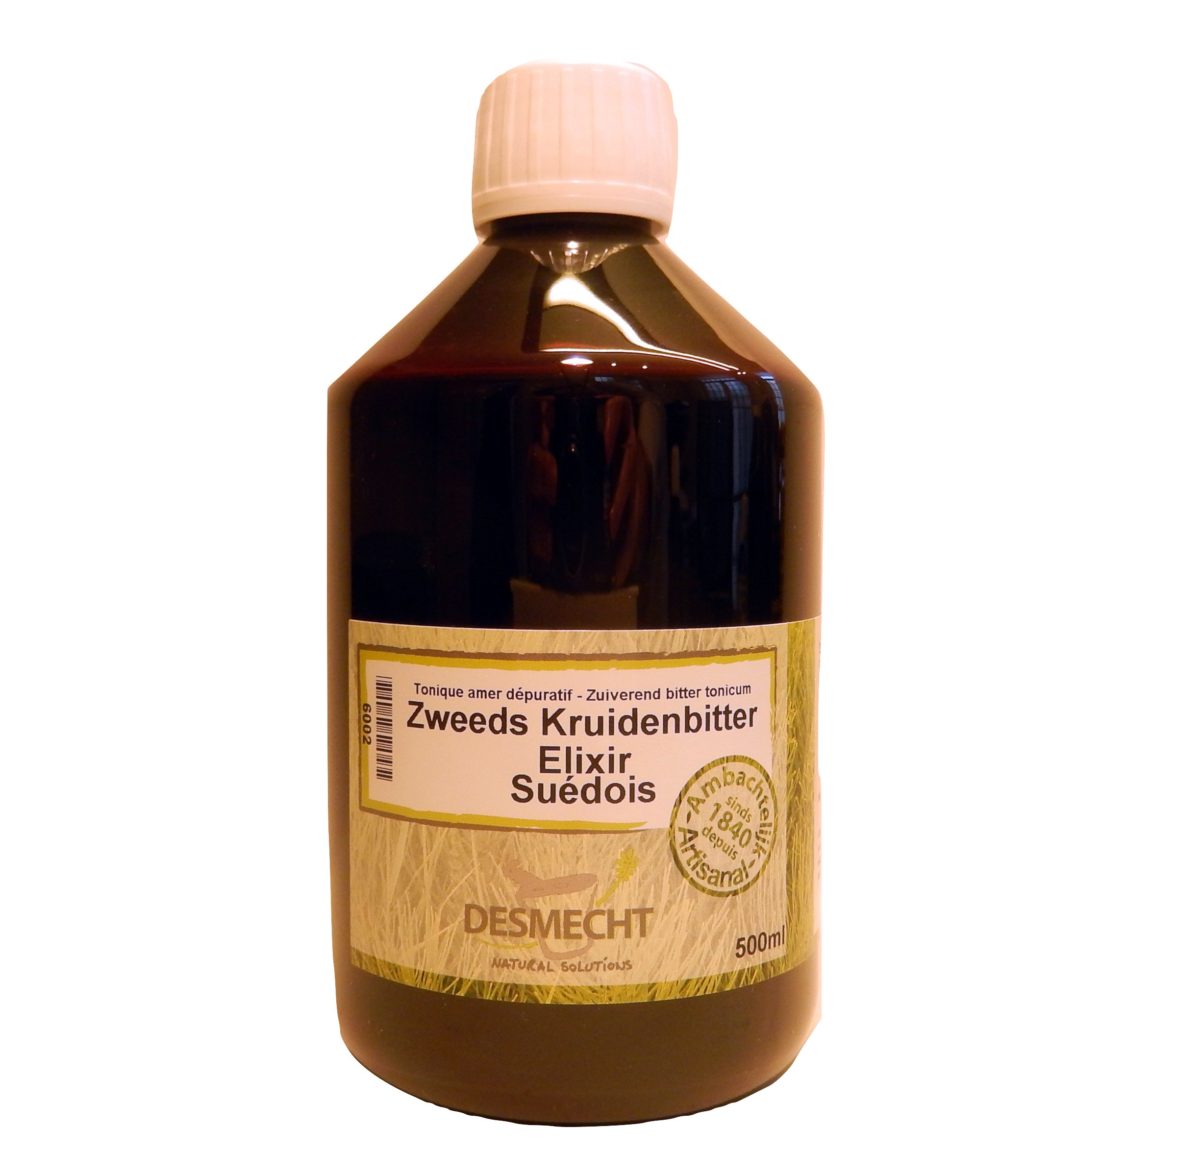 Online kopen: Zweeds kruidenbitter 500ml (recept MET kamfer) - Eveneens beschikbaar kamfer (Het gebruik van kamfer wordt met simultaan gebruik van homeopathische producten)Ook beschikbaar in 200ml en 1liter